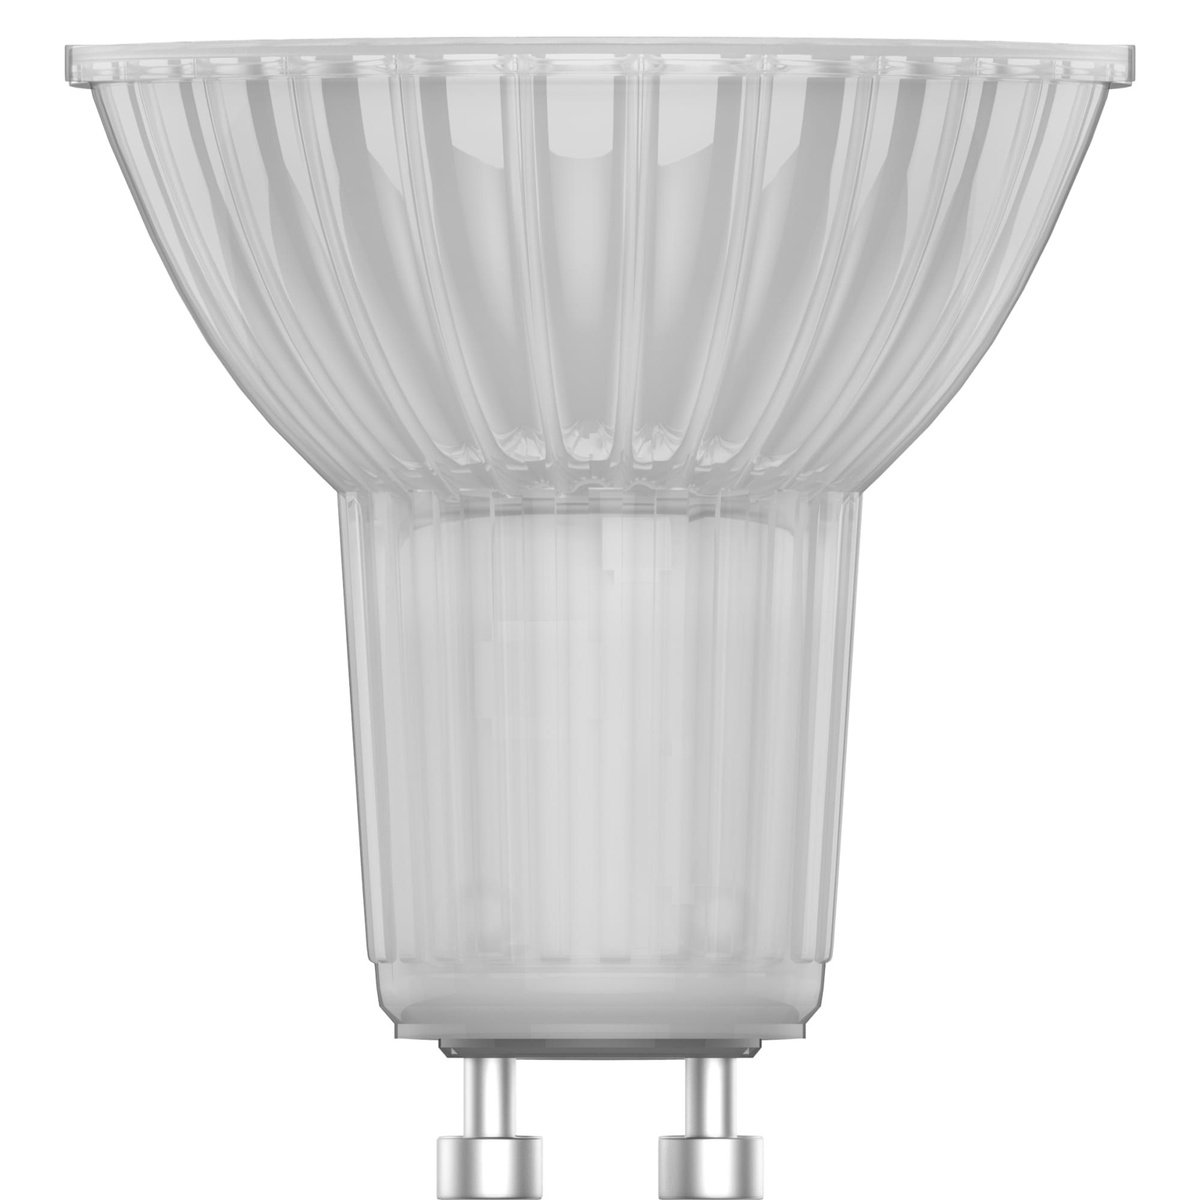 Лампа светодиодная Lexman GU10 220-240 В 5.5 Вт прозрачная 500 лм нейтральный белый свет - Рис. 3